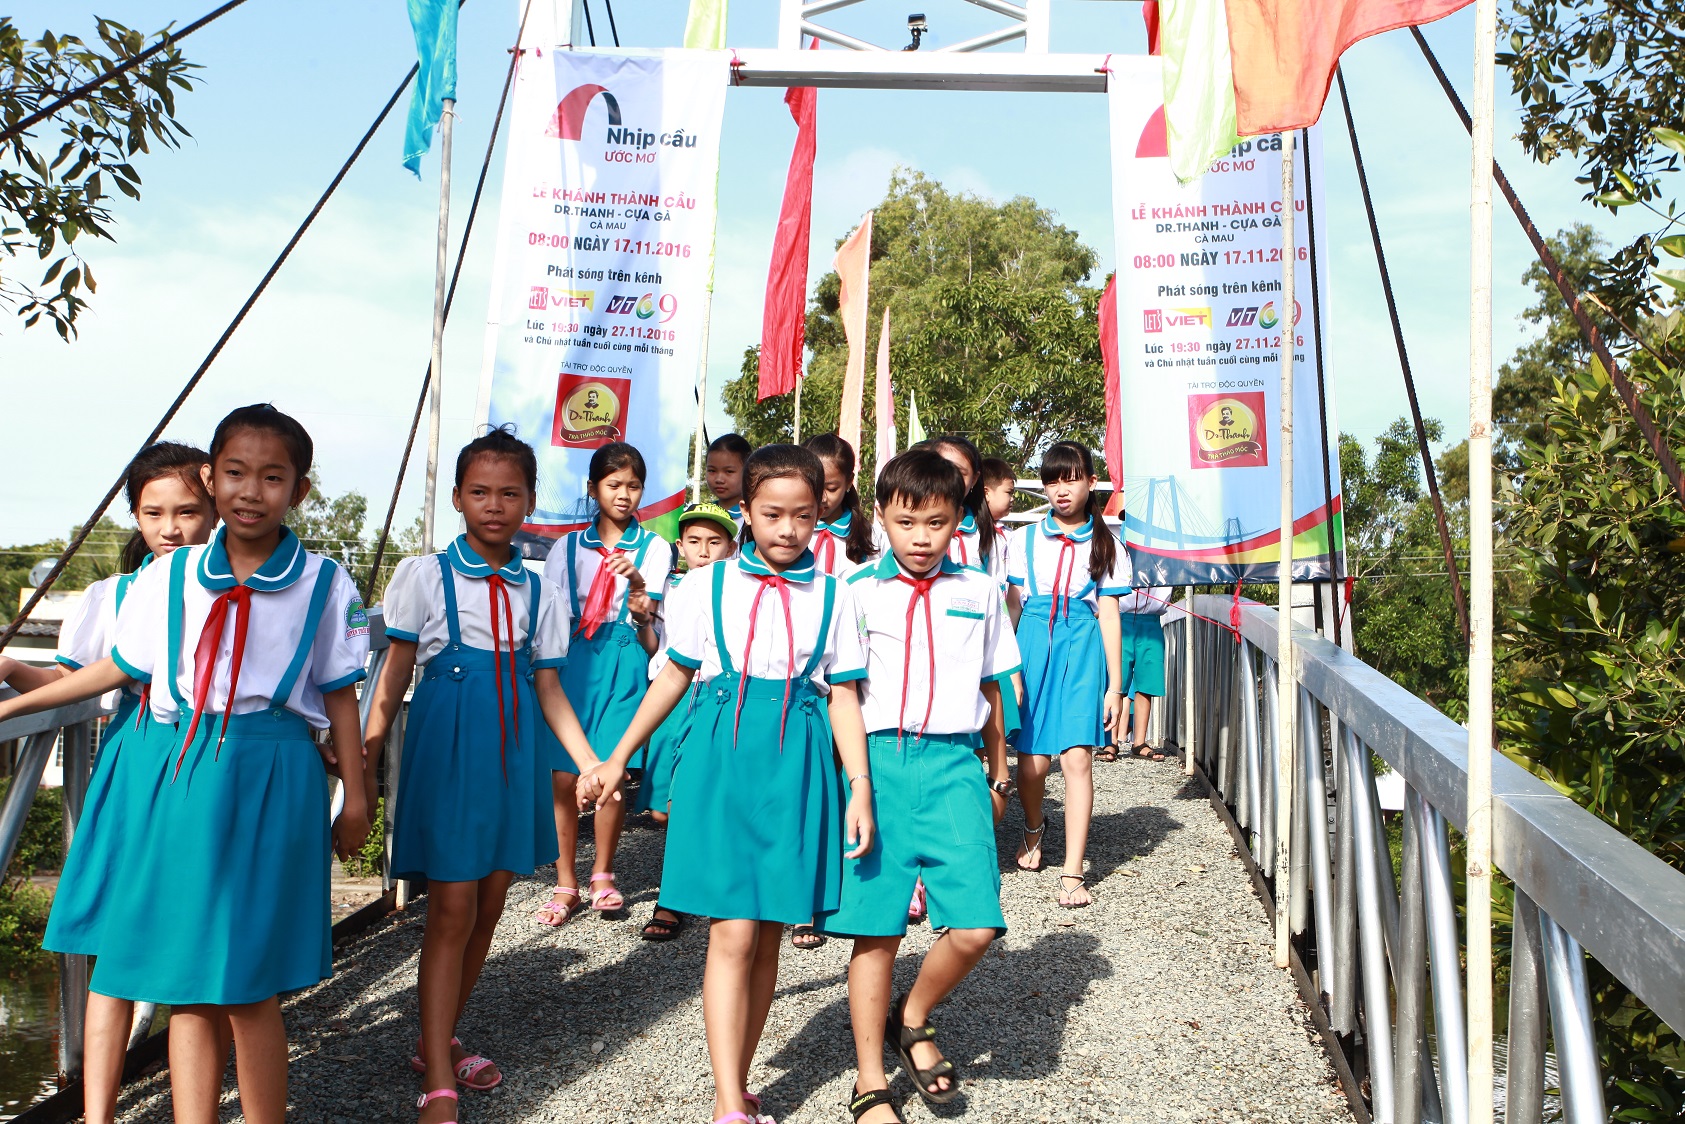 Các em học sinh trường tiểu học Tân Lập tung tăng trên cây cầu thép dây văng